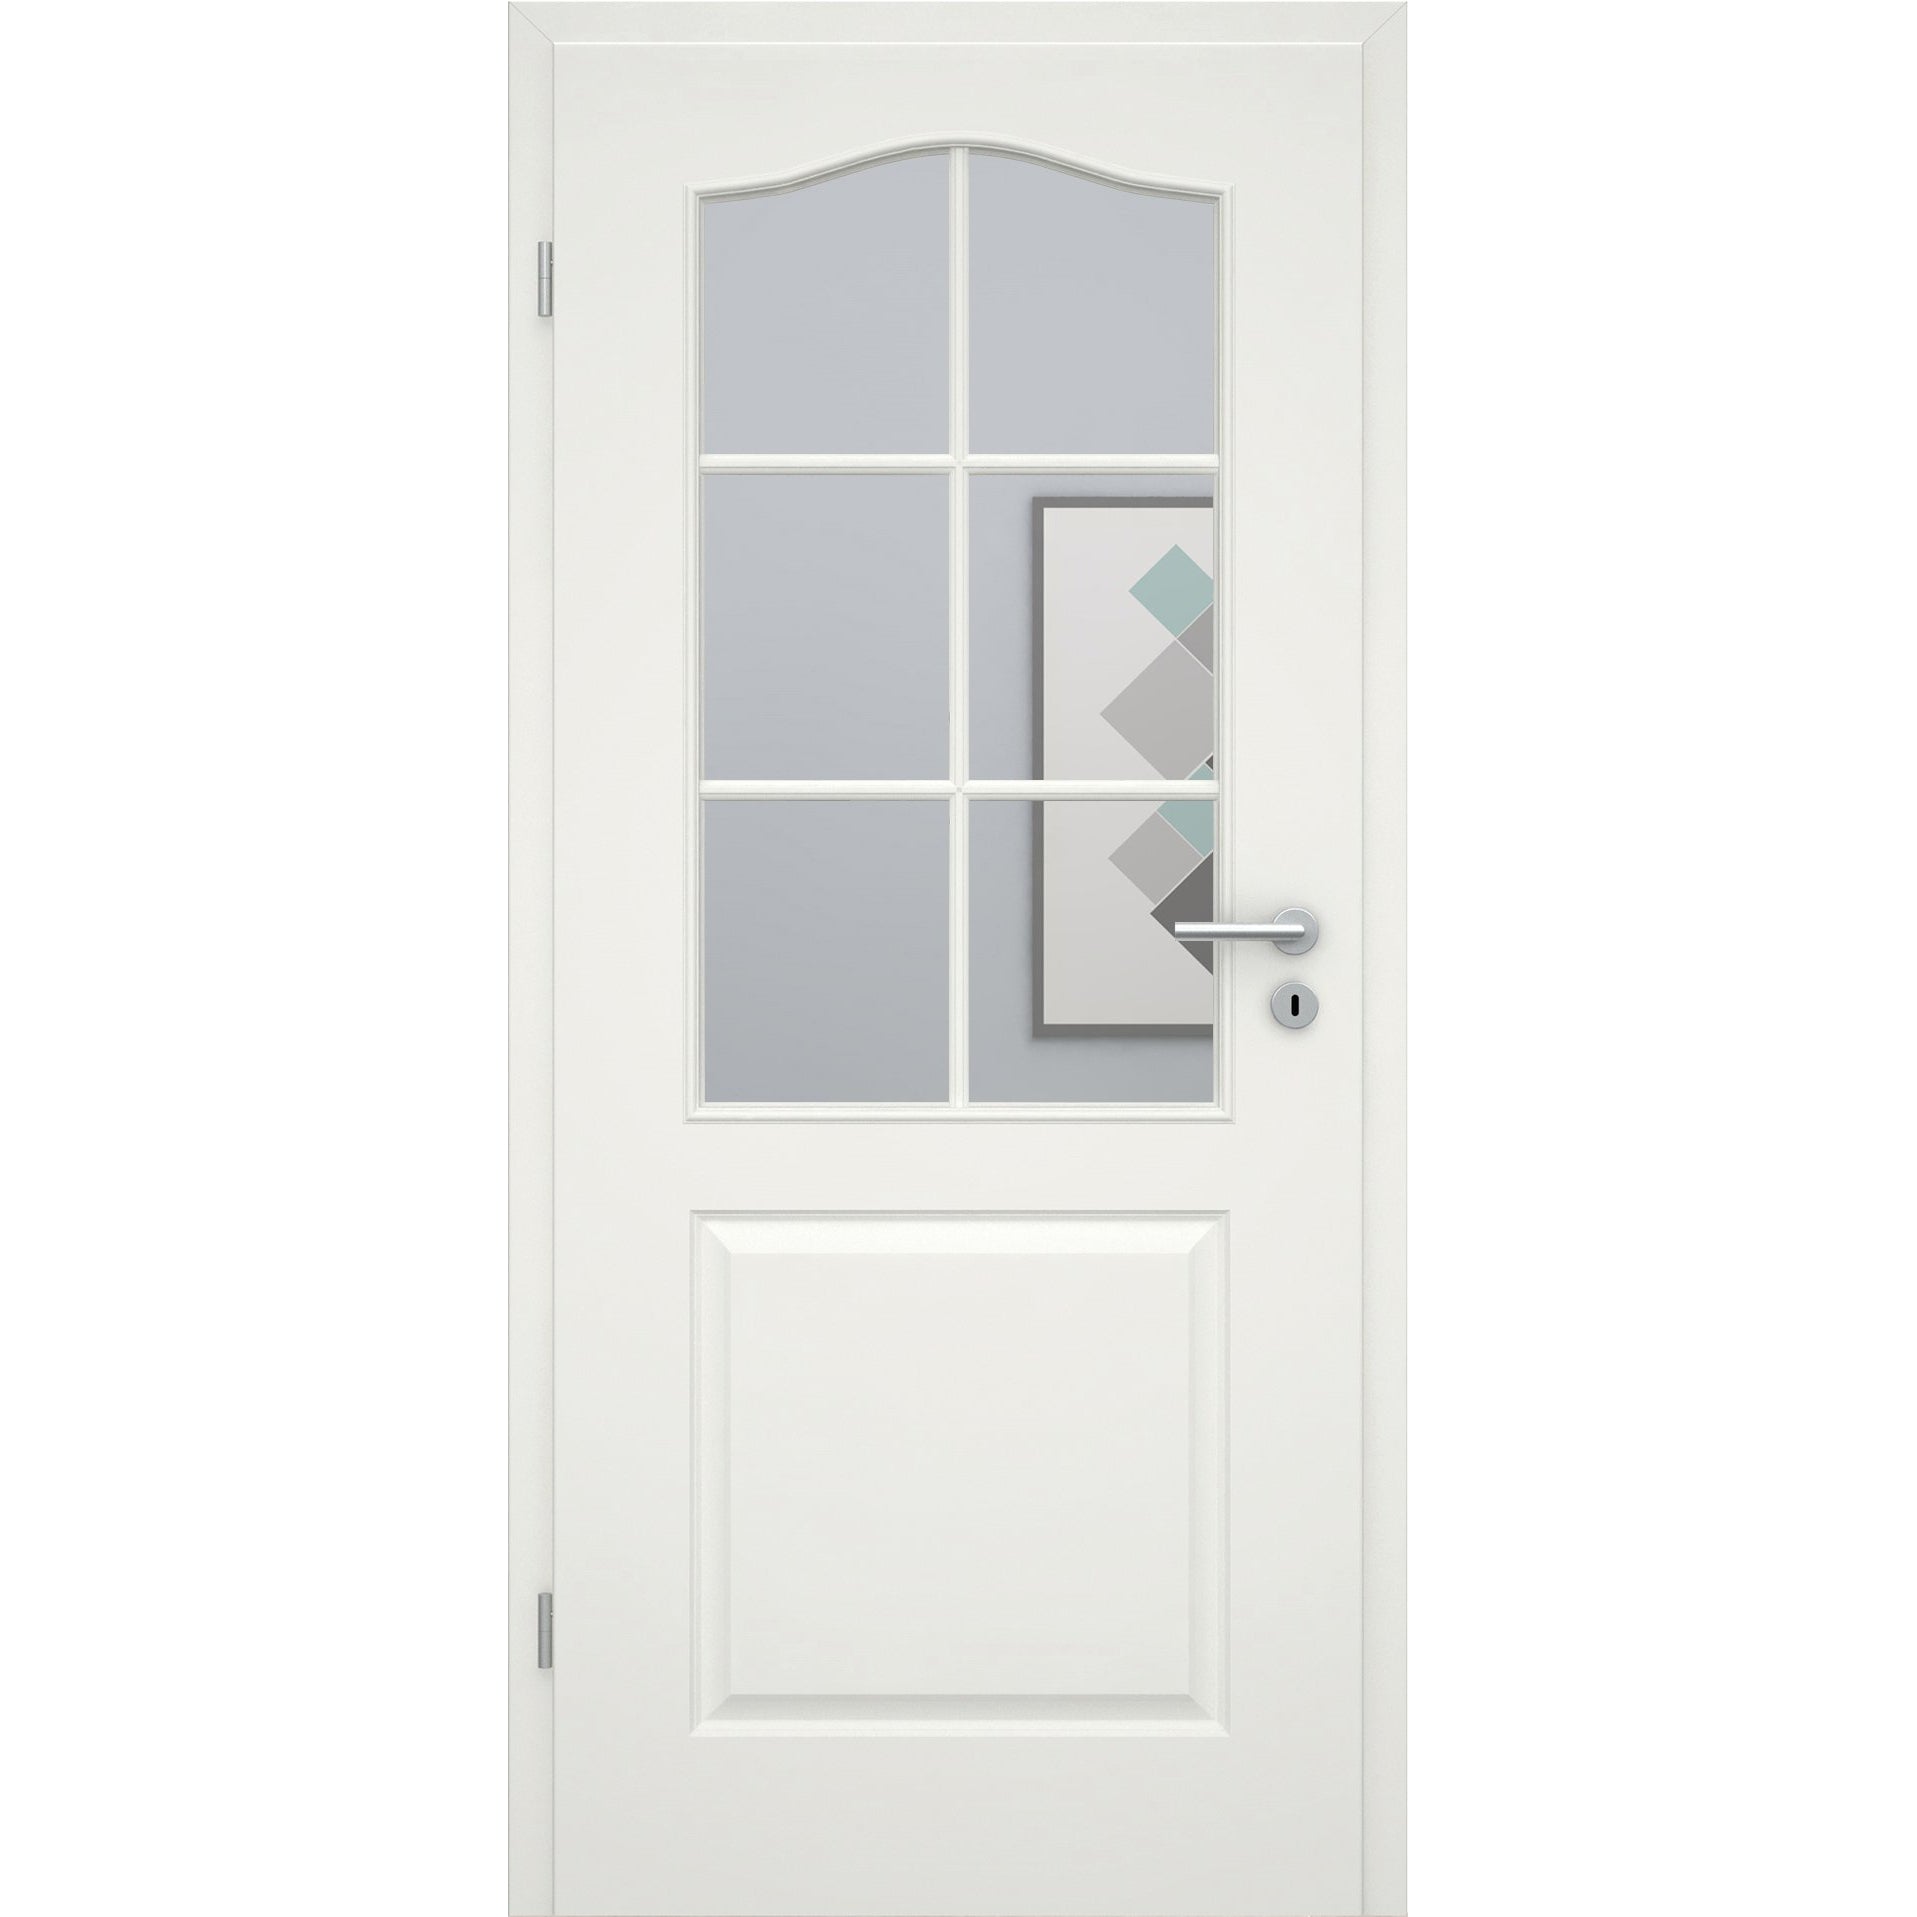 Zimmertür mit Lichtausschnitt mit Sprossenrahmen standard soft-weiß 2 Kassetten Schweifbogen Eckkante - Modell Stiltür KS21LASPS